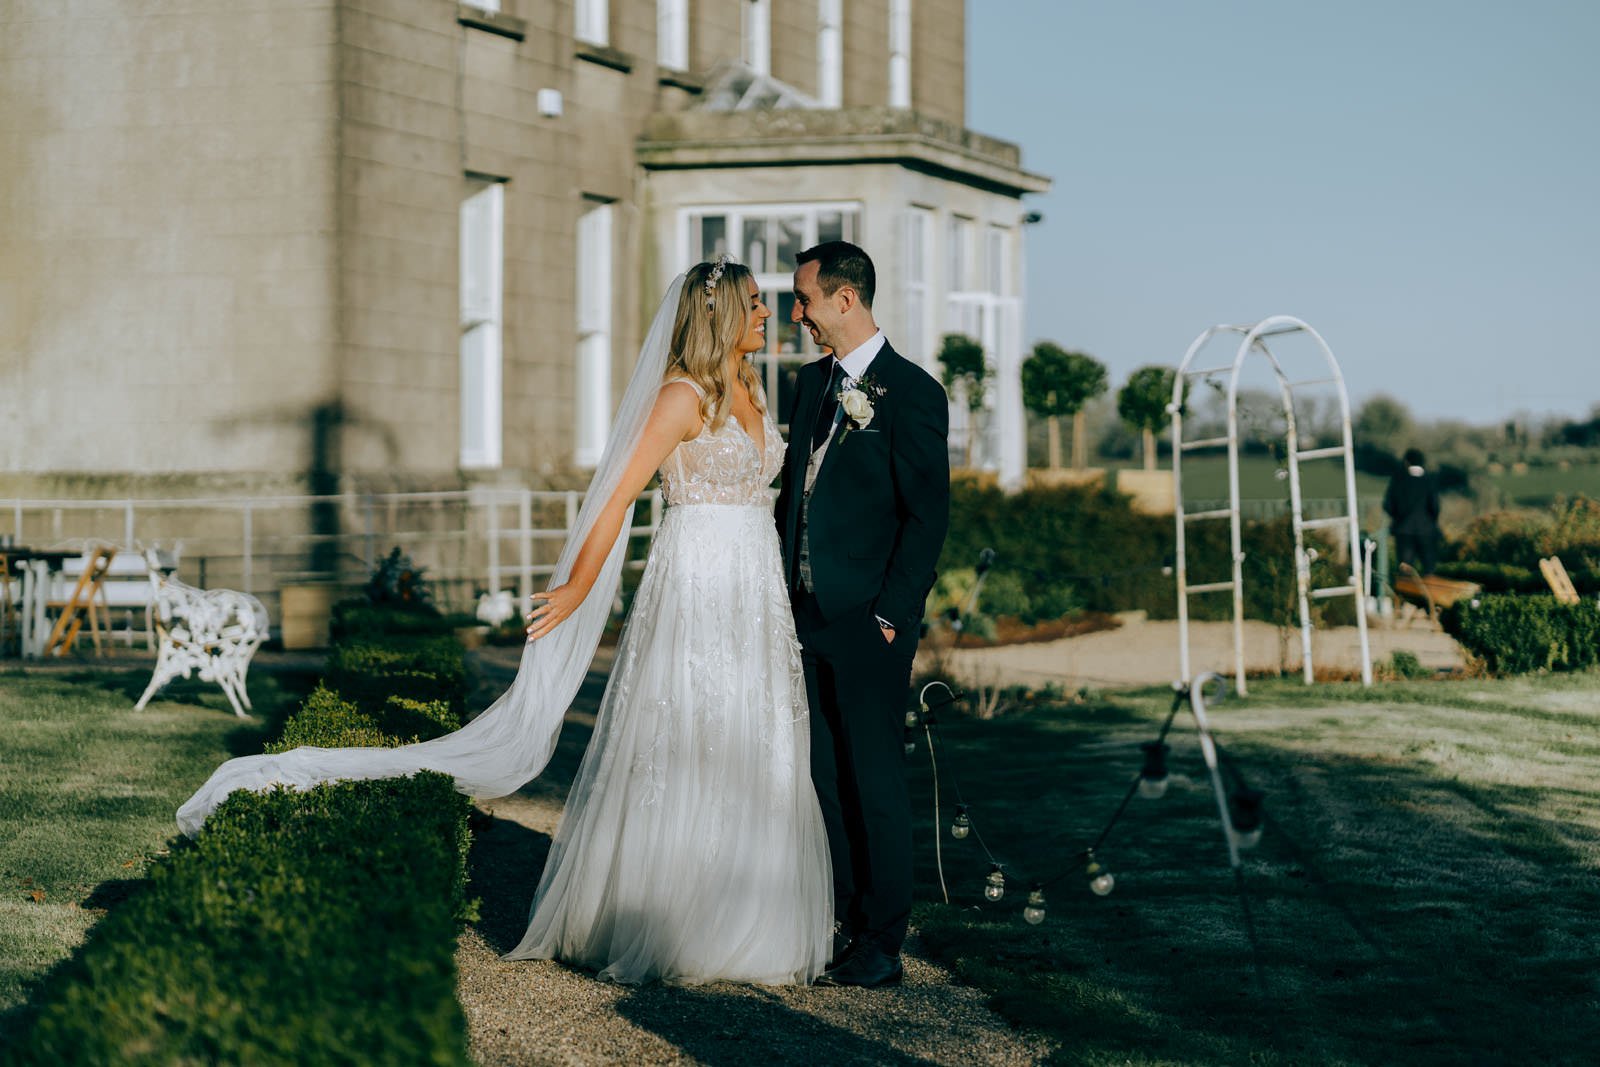 Horetown-House-best-wedding-venues-Ireland-25.jpg